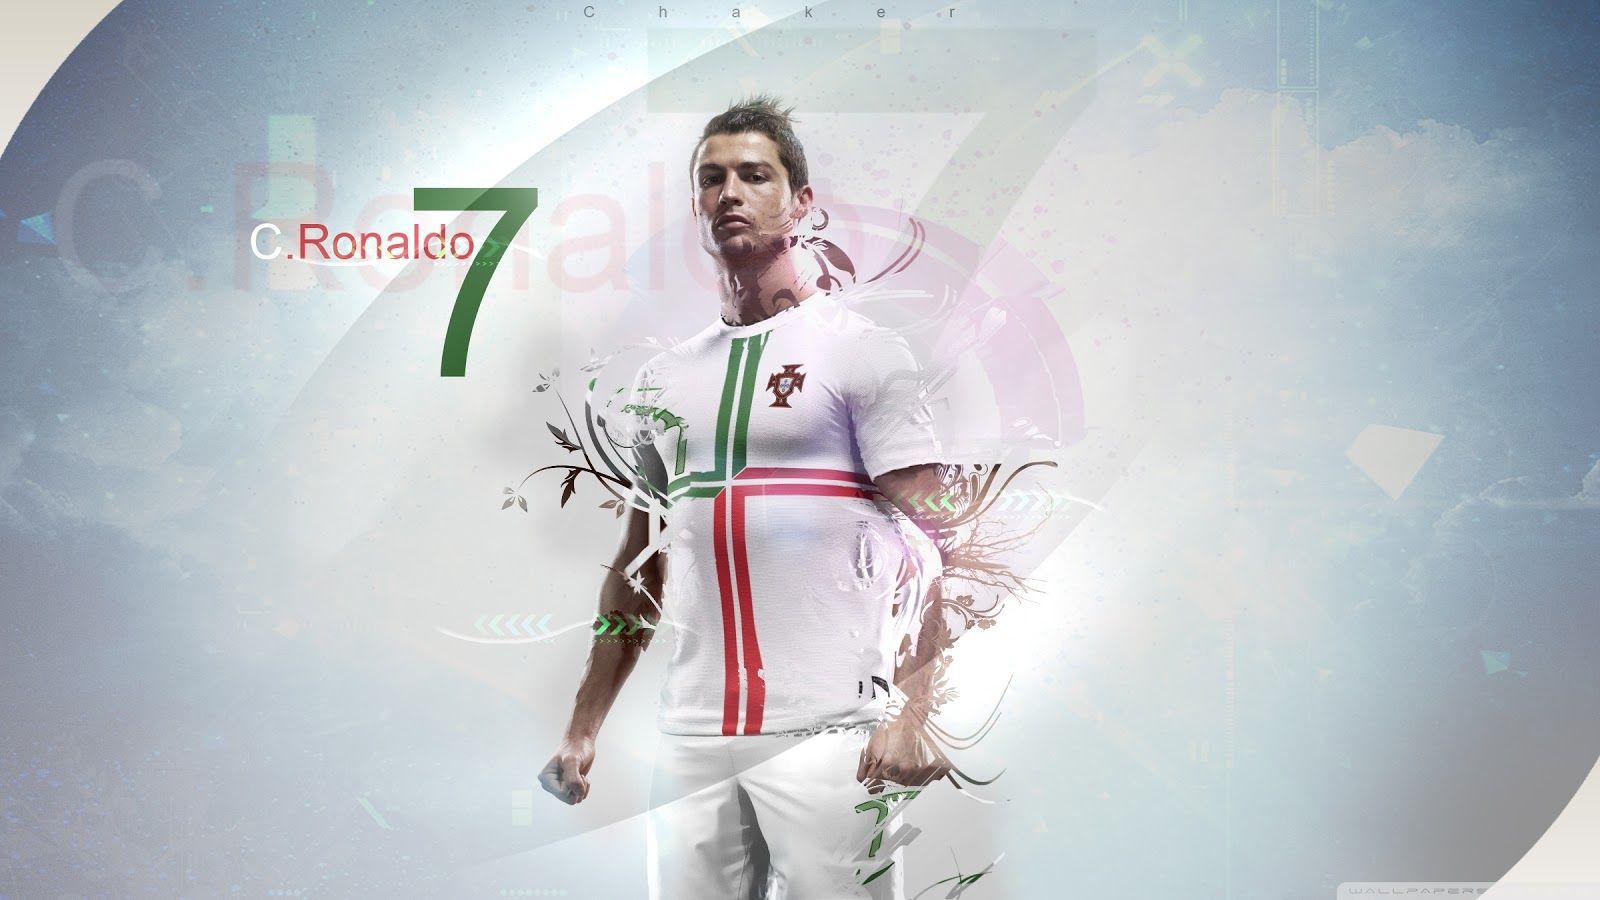 Wallpaper Cristiano Ronaldo 2014